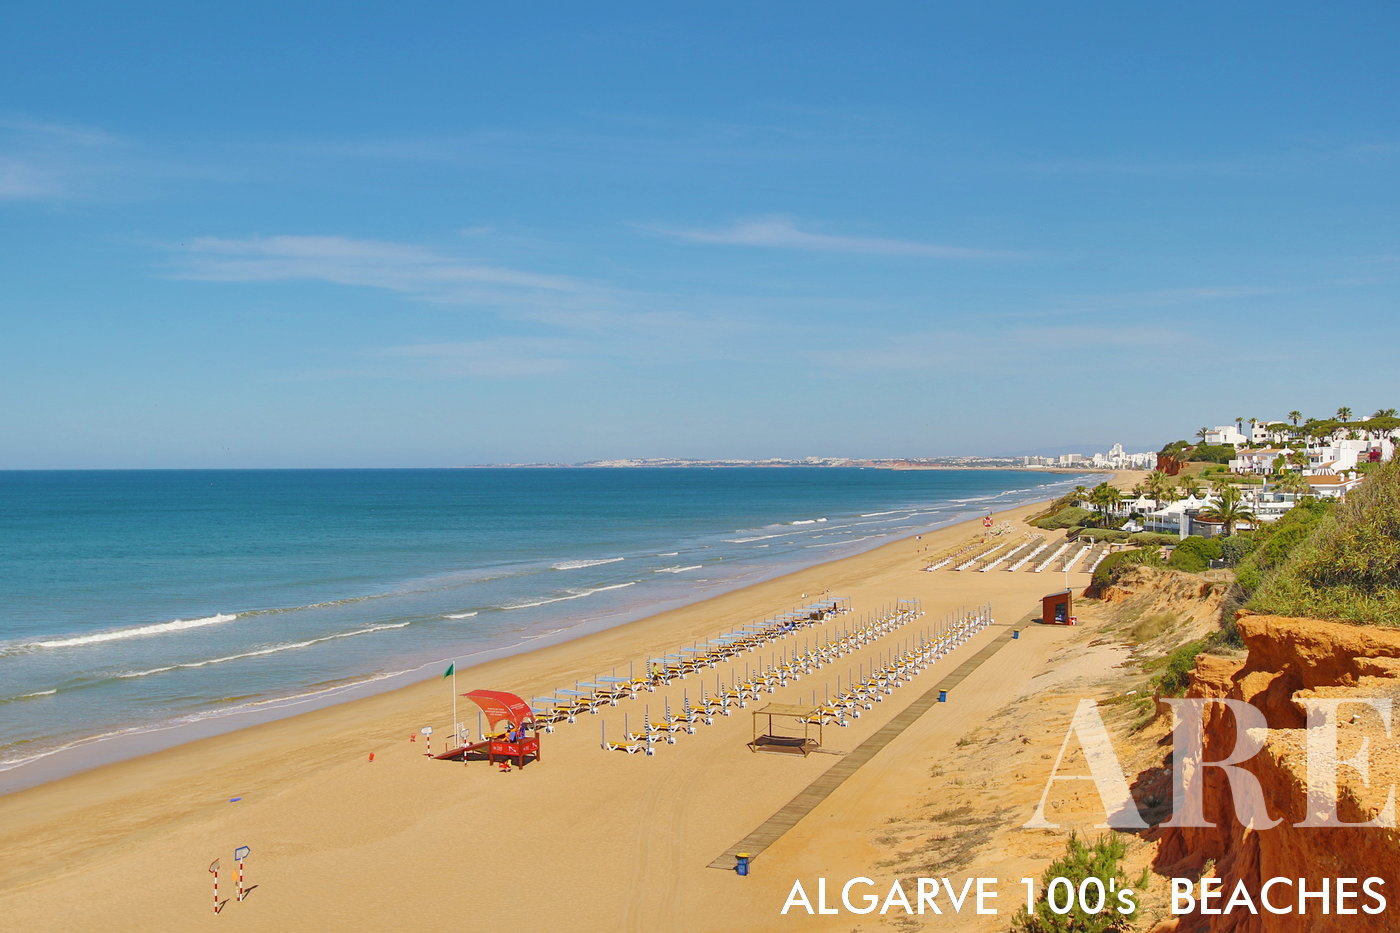 La playa de Vale do Lobo cuenta con una extensa extensión de arena que se extiende aproximadamente 14 kilómetros, desde Forte Novo en Quarteira hasta Faro